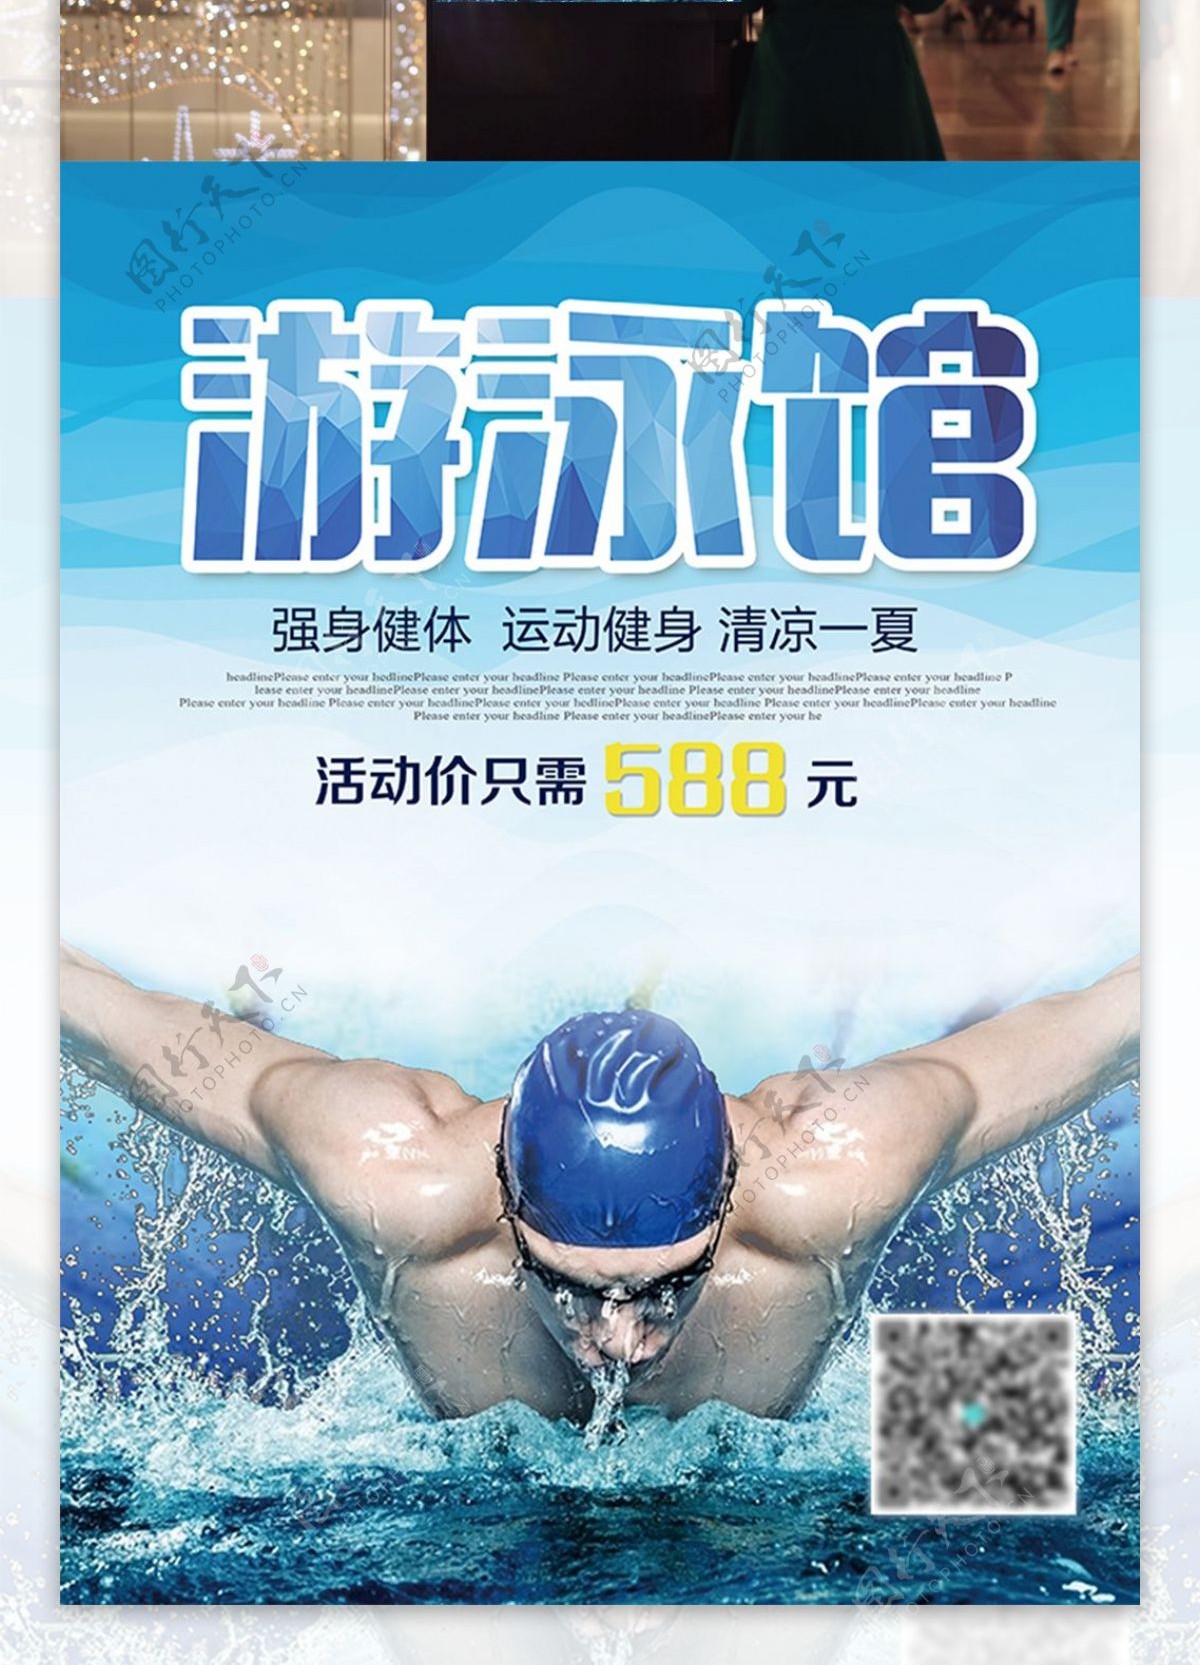 游泳馆开业活动优惠促销海报高清psd